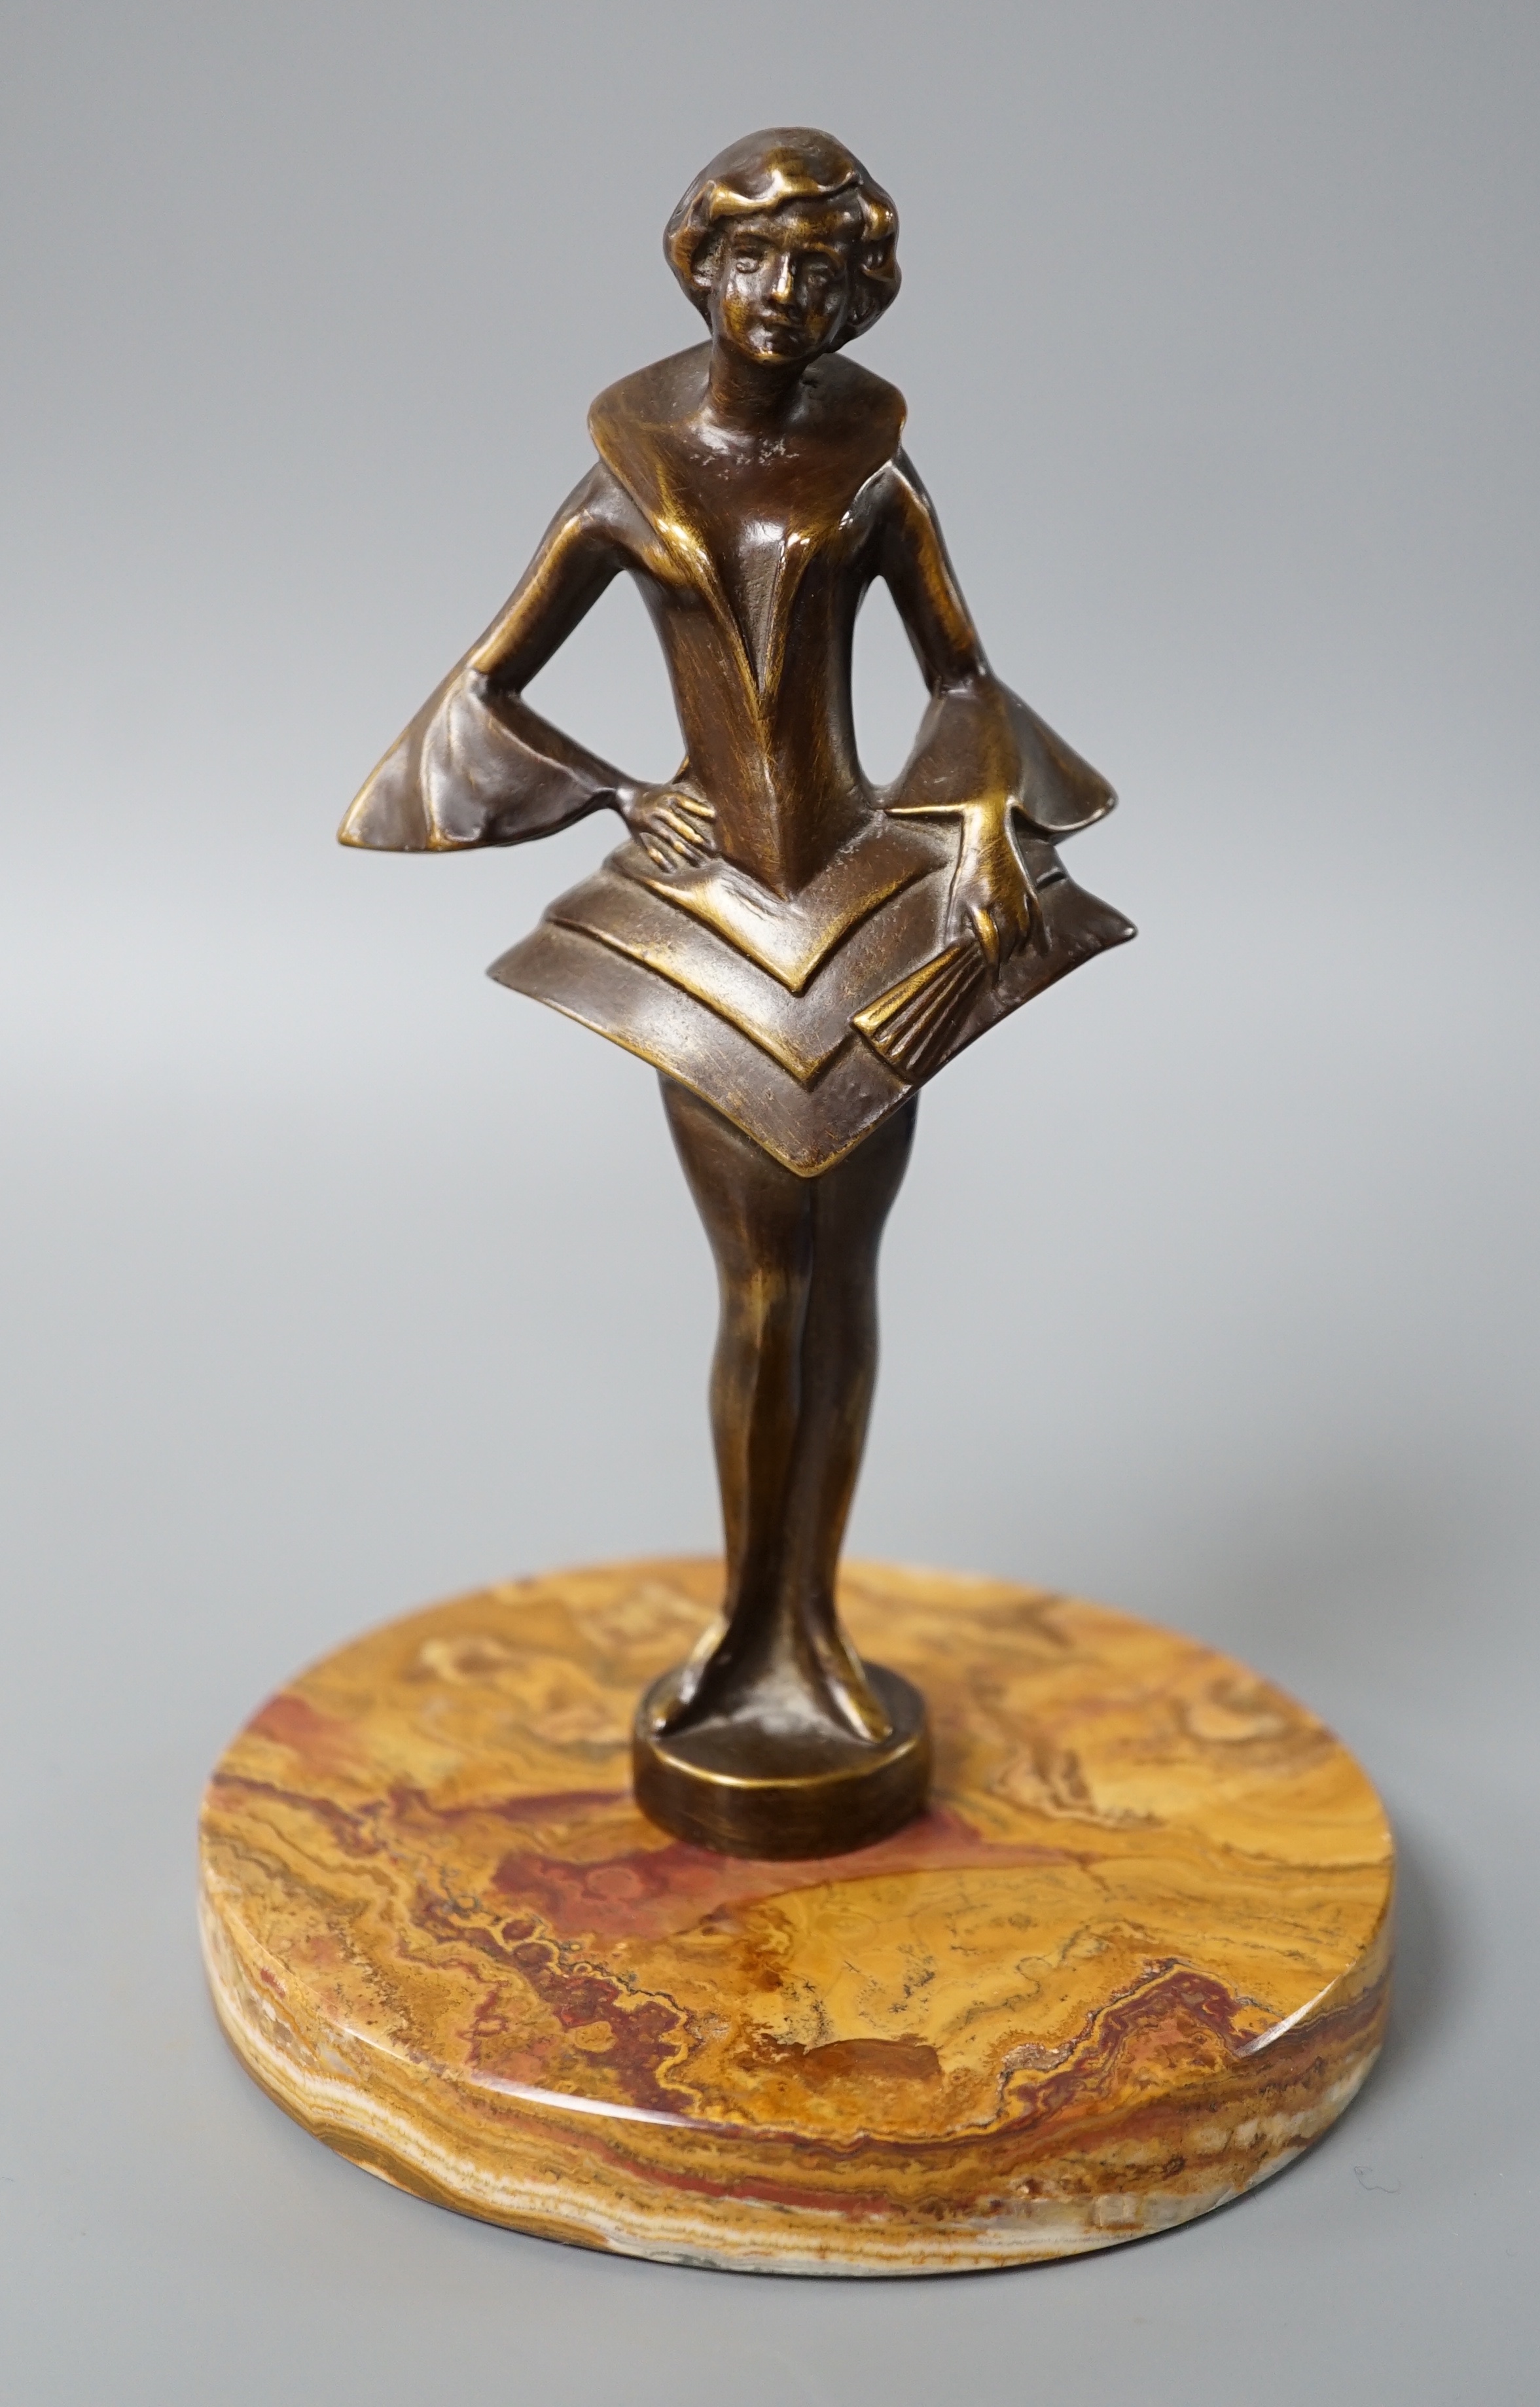 An Art Deco style bronze figure of a woman, 17 cms high.